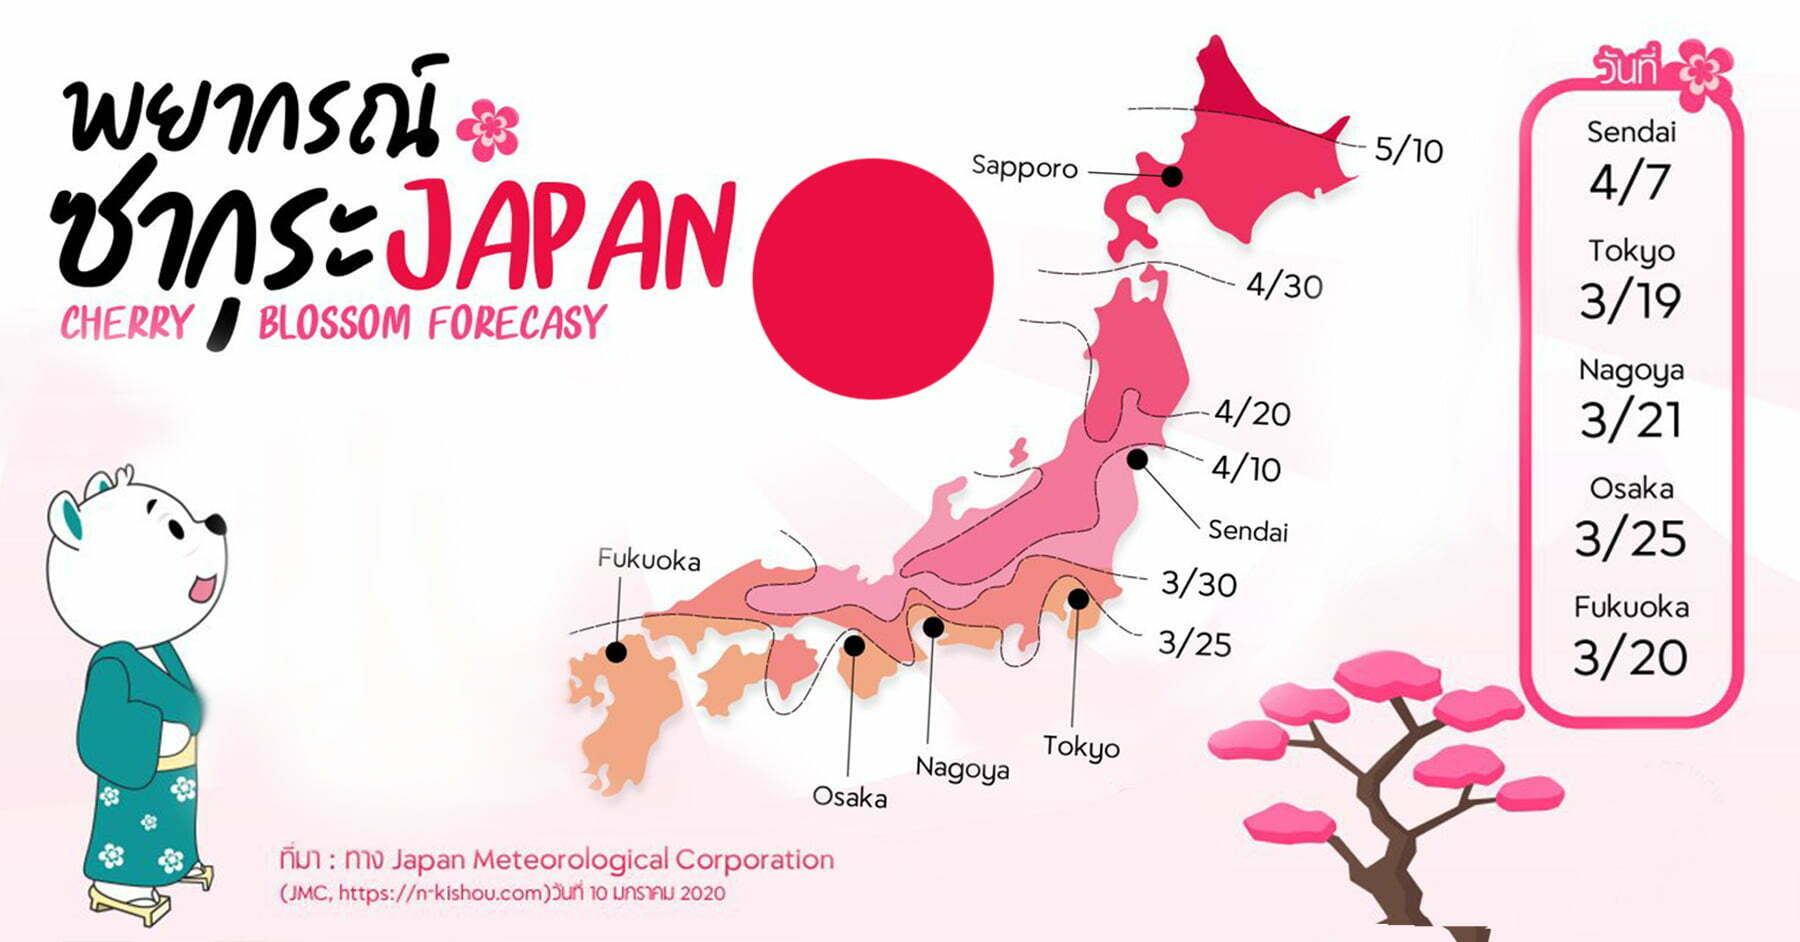 เที่ยวญี่ปุ่น รู้ก่อน..ไม่พลาดแน่นอน!! พยากรณ์ซากุระที่ญี่ปุ่น ปี 2020